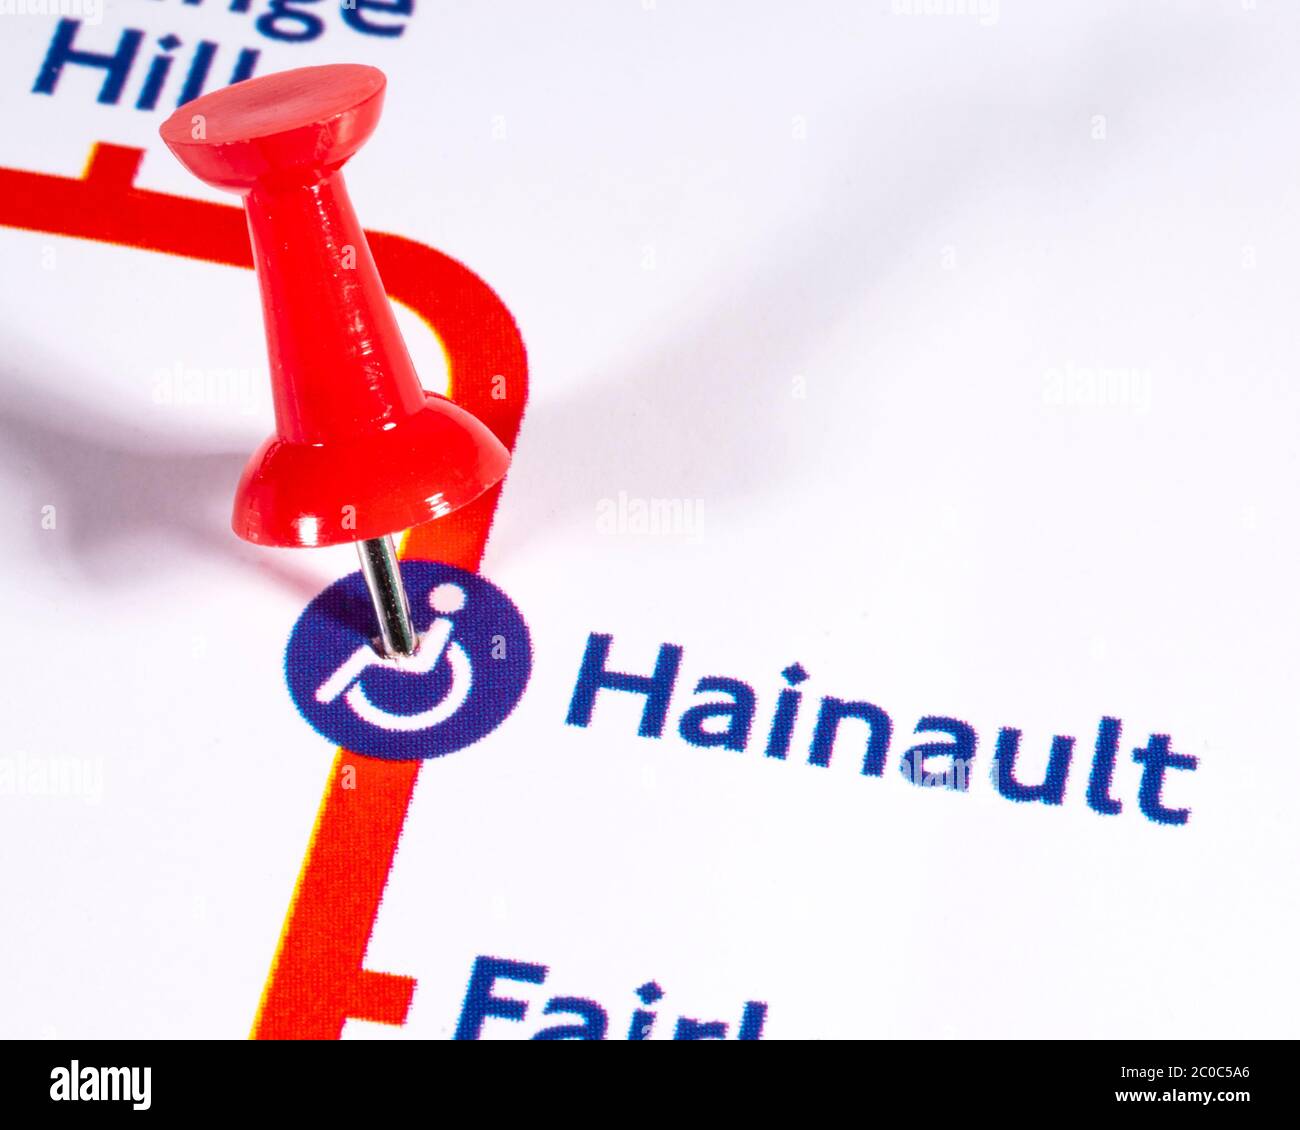 Londres, Royaume-Uni - 10 juin 2020 : une carte PIN marquant l'emplacement de la station Hainault sur un métro de Londres carte Banque D'Images